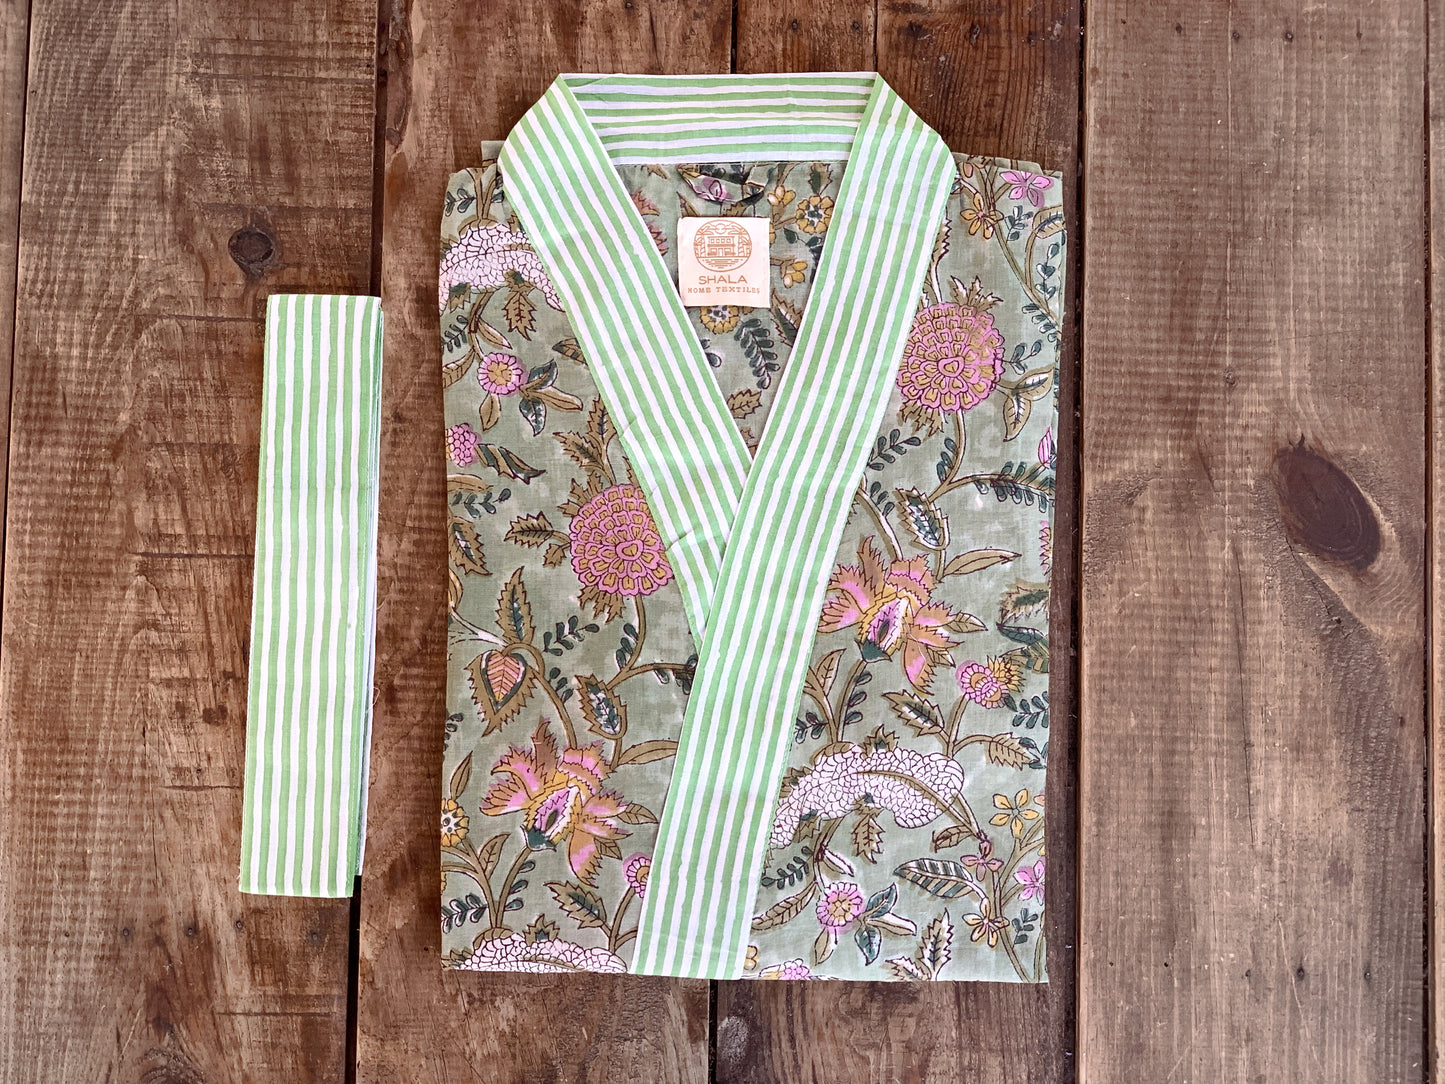 SET regalo · Bata kimono y bolsa de aseo juego · Algodón 100% puro estampado block print artesanal en India · Verde morado